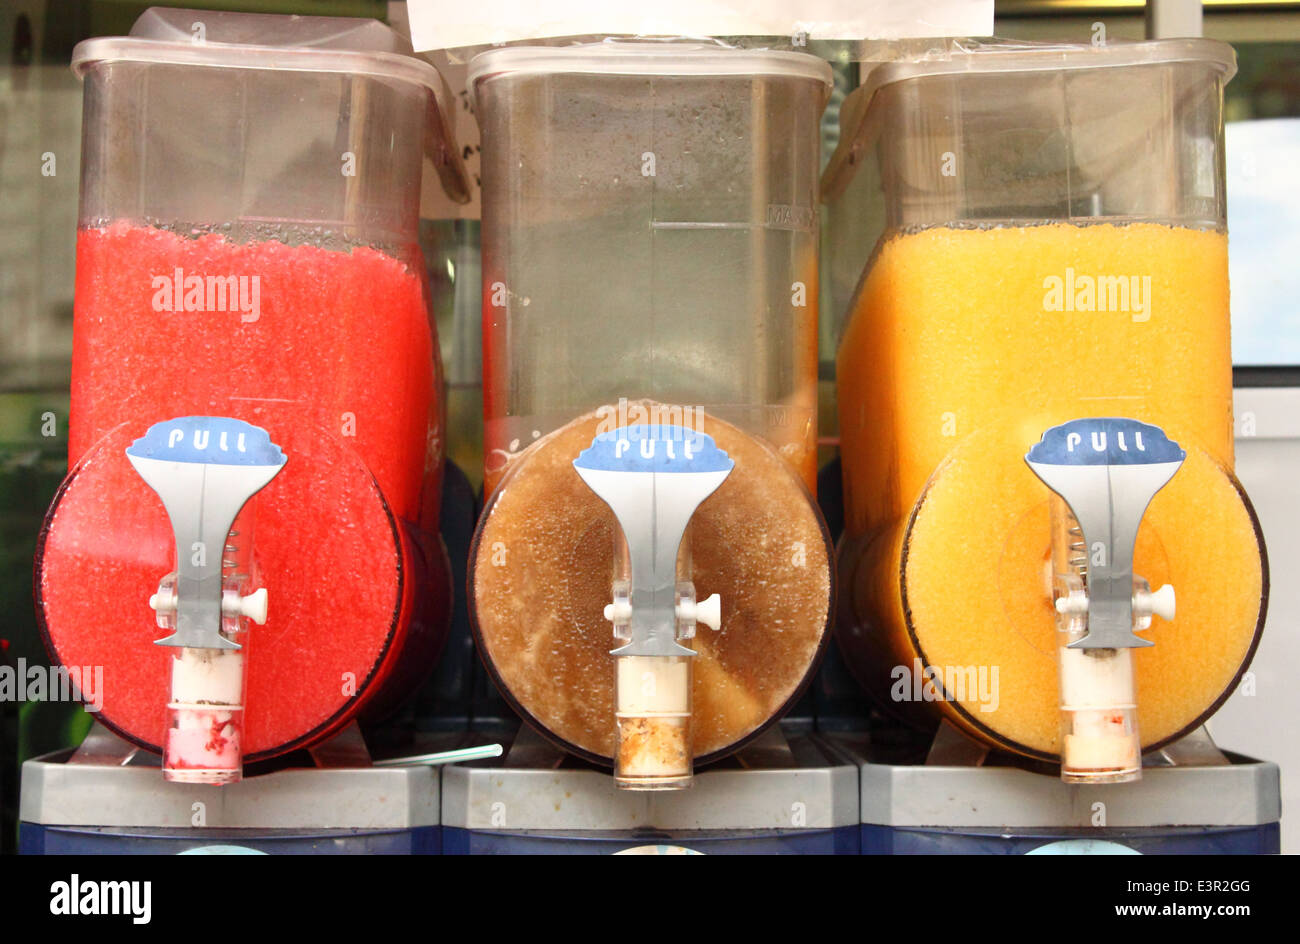 La glace concassée distributeur de boisson, un rafraîchissement typiquement italien Banque D'Images